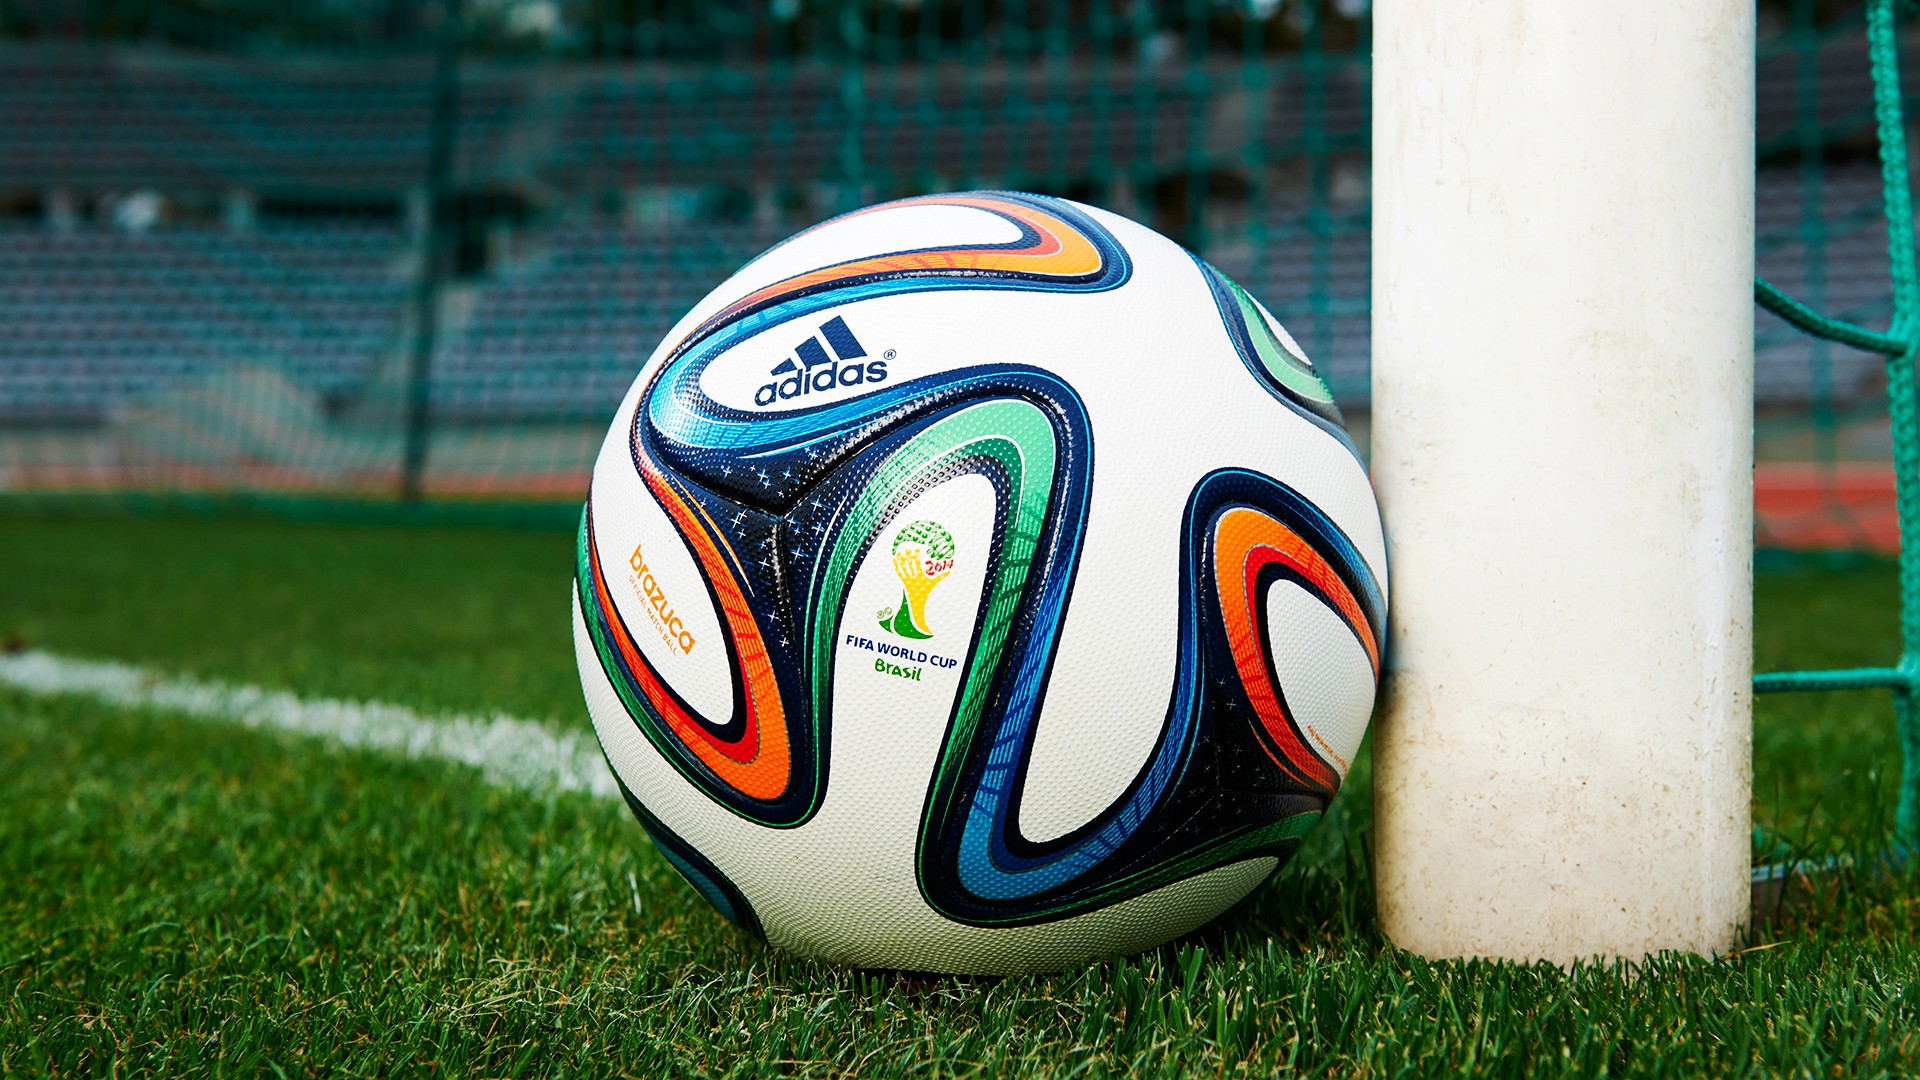 fondo de pantalla de la copa del mundo,balón de fútbol,fútbol americano,césped,equipo deportivo,pallone